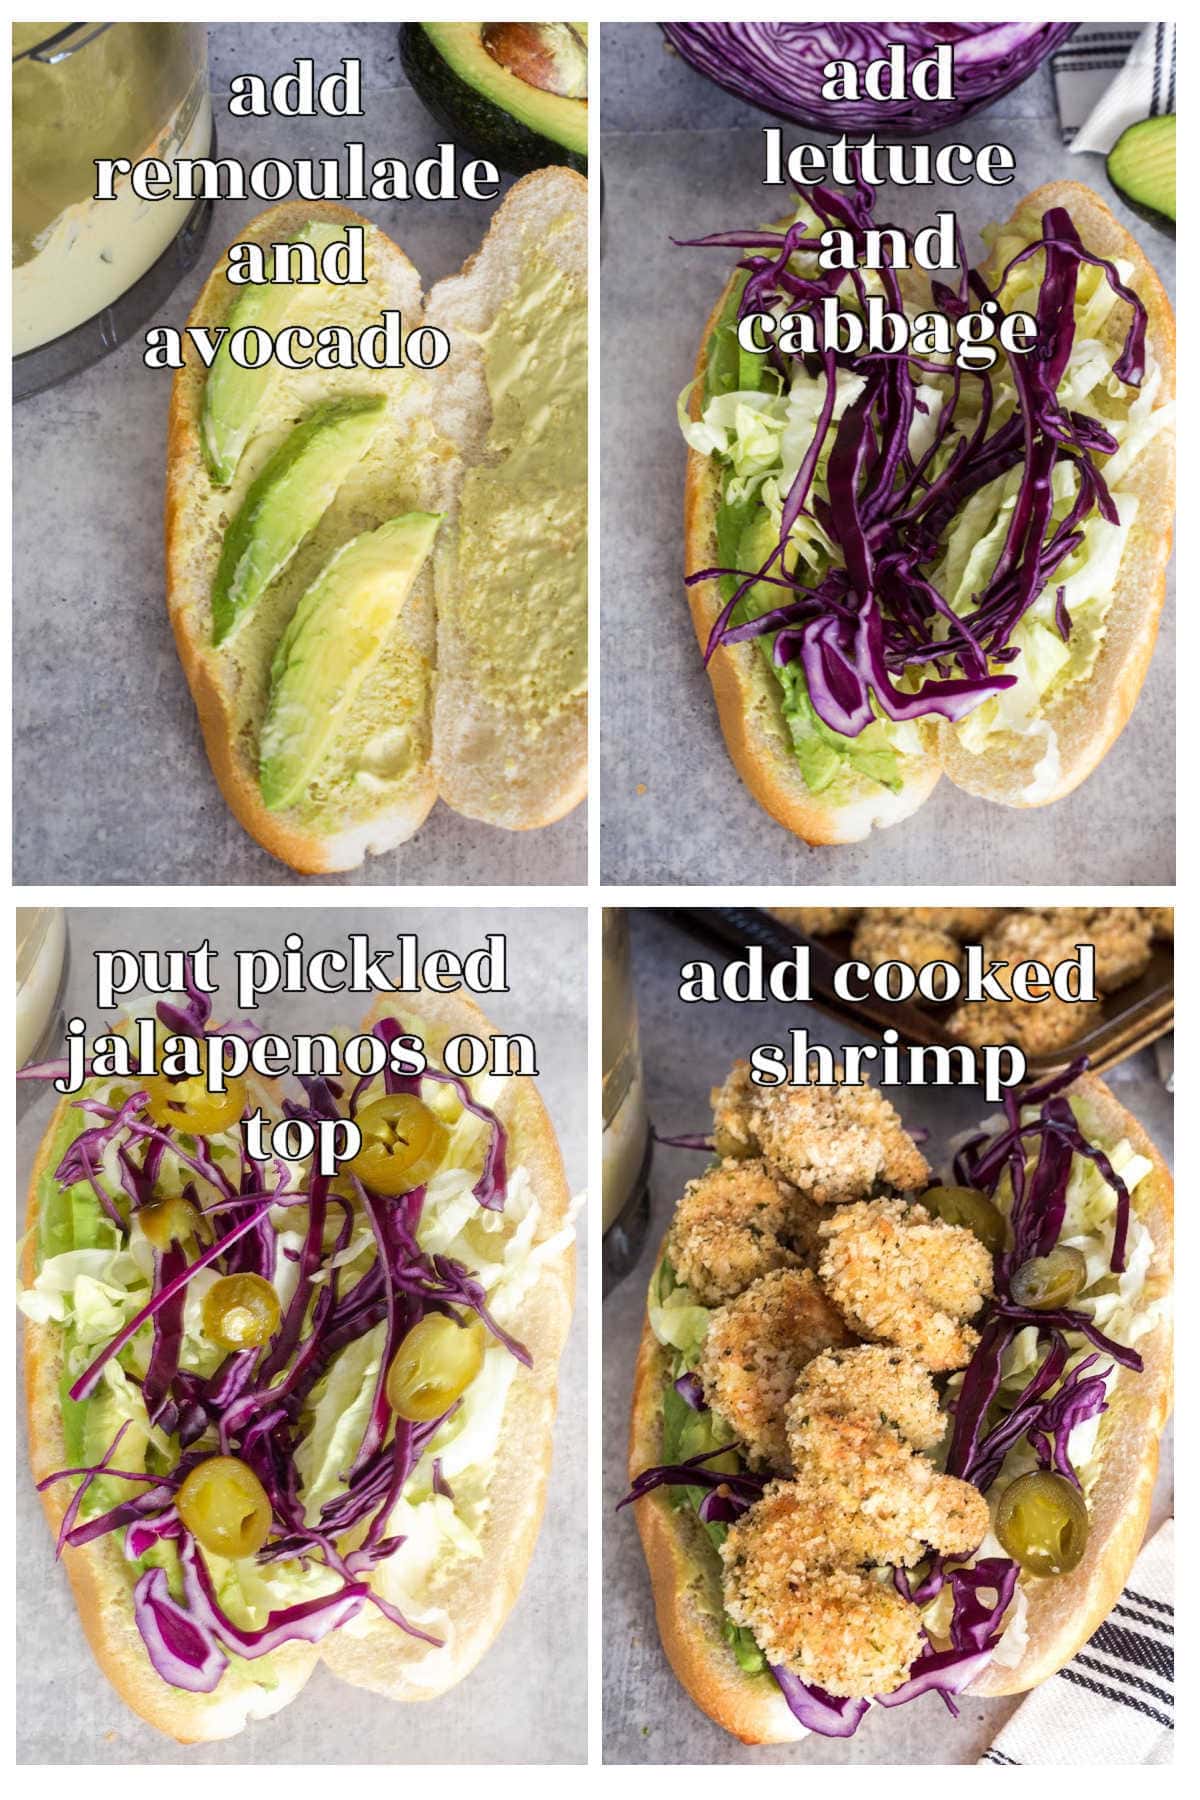 Steps for putting the Shrimp Po' Boy sandwich together.